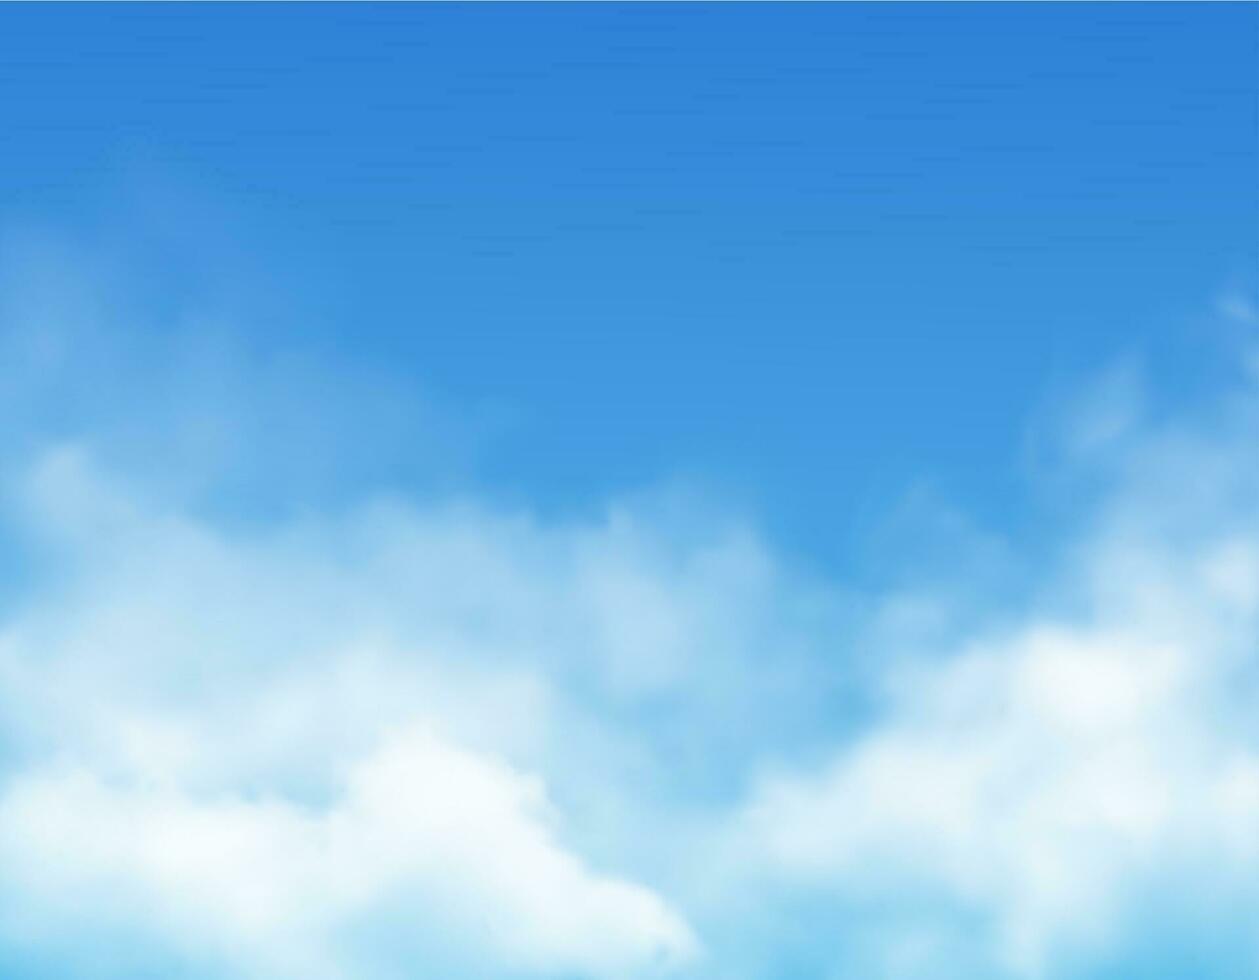 Wolken auf Blau Himmel Hintergrund, realistisch Vektor